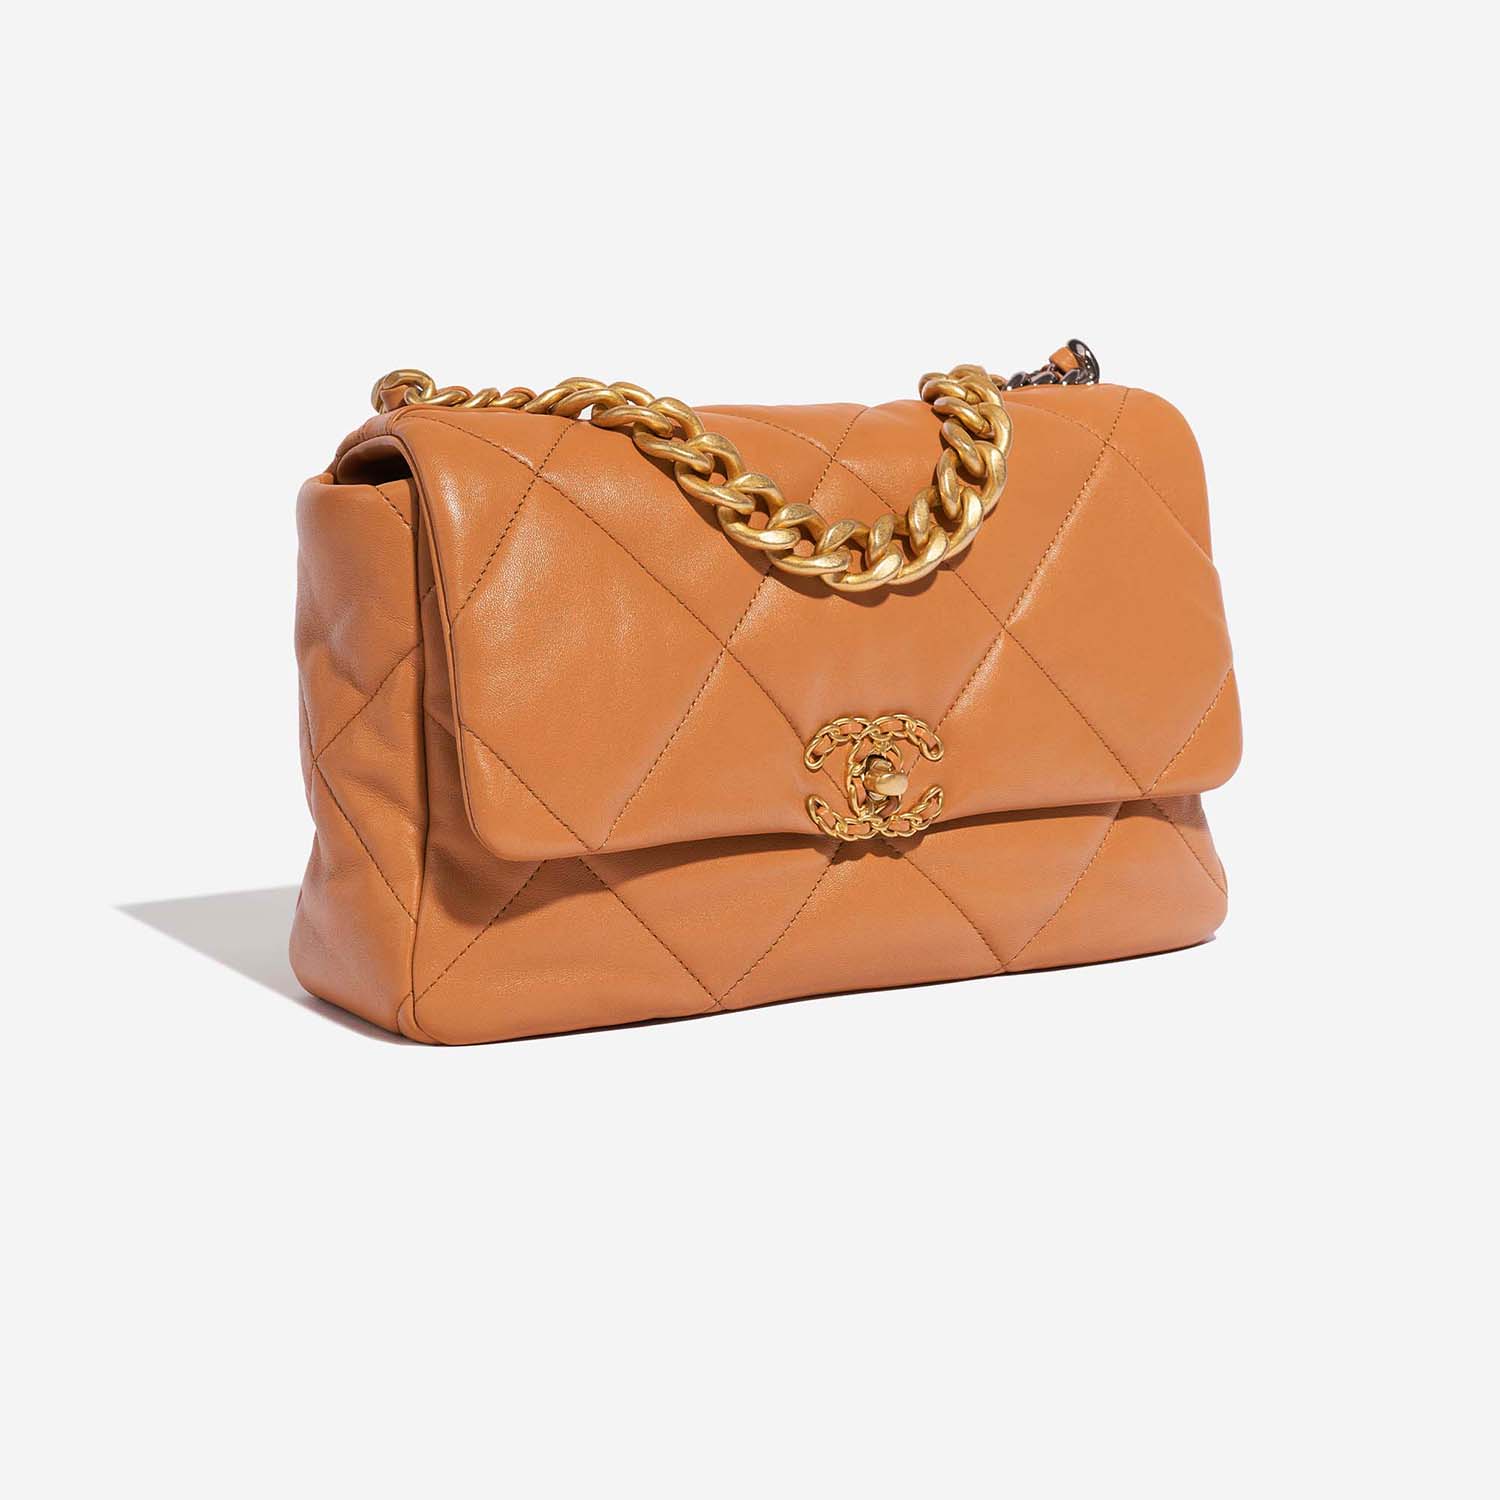 Chanel 19 Large Flap Bag Cognac Side Front | Verkaufen Sie Ihre Designer-Tasche auf Saclab.com